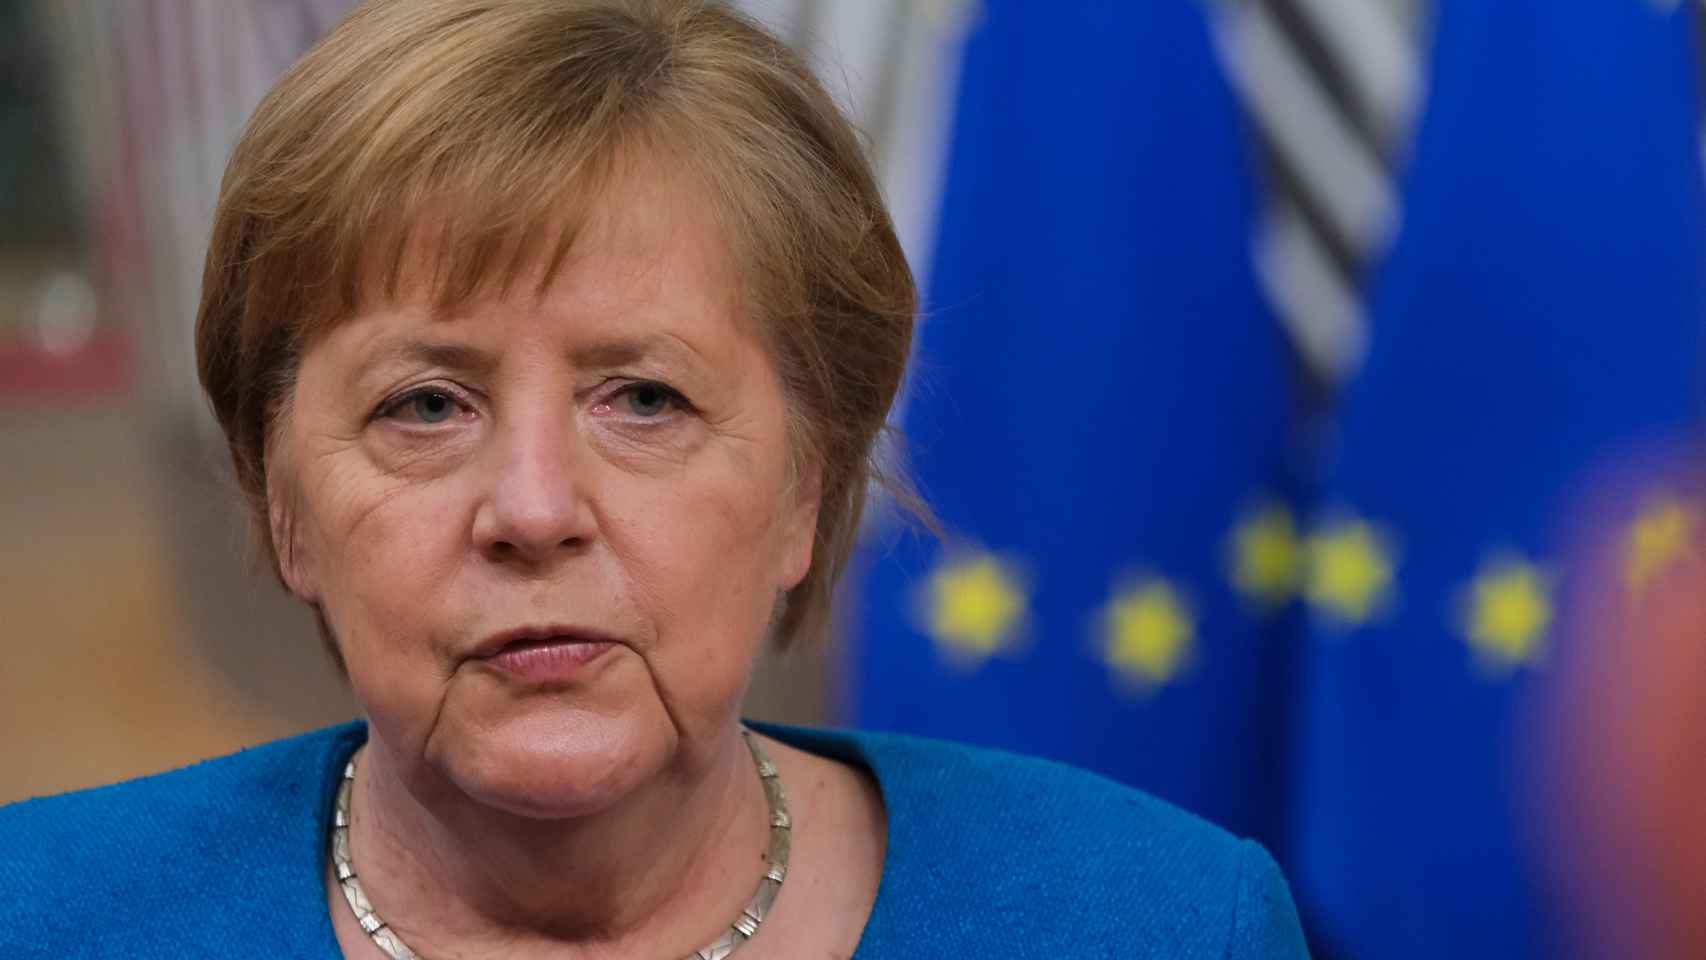 La canciller Angela Merkel ha marcado la política europea de los últimos 18 años